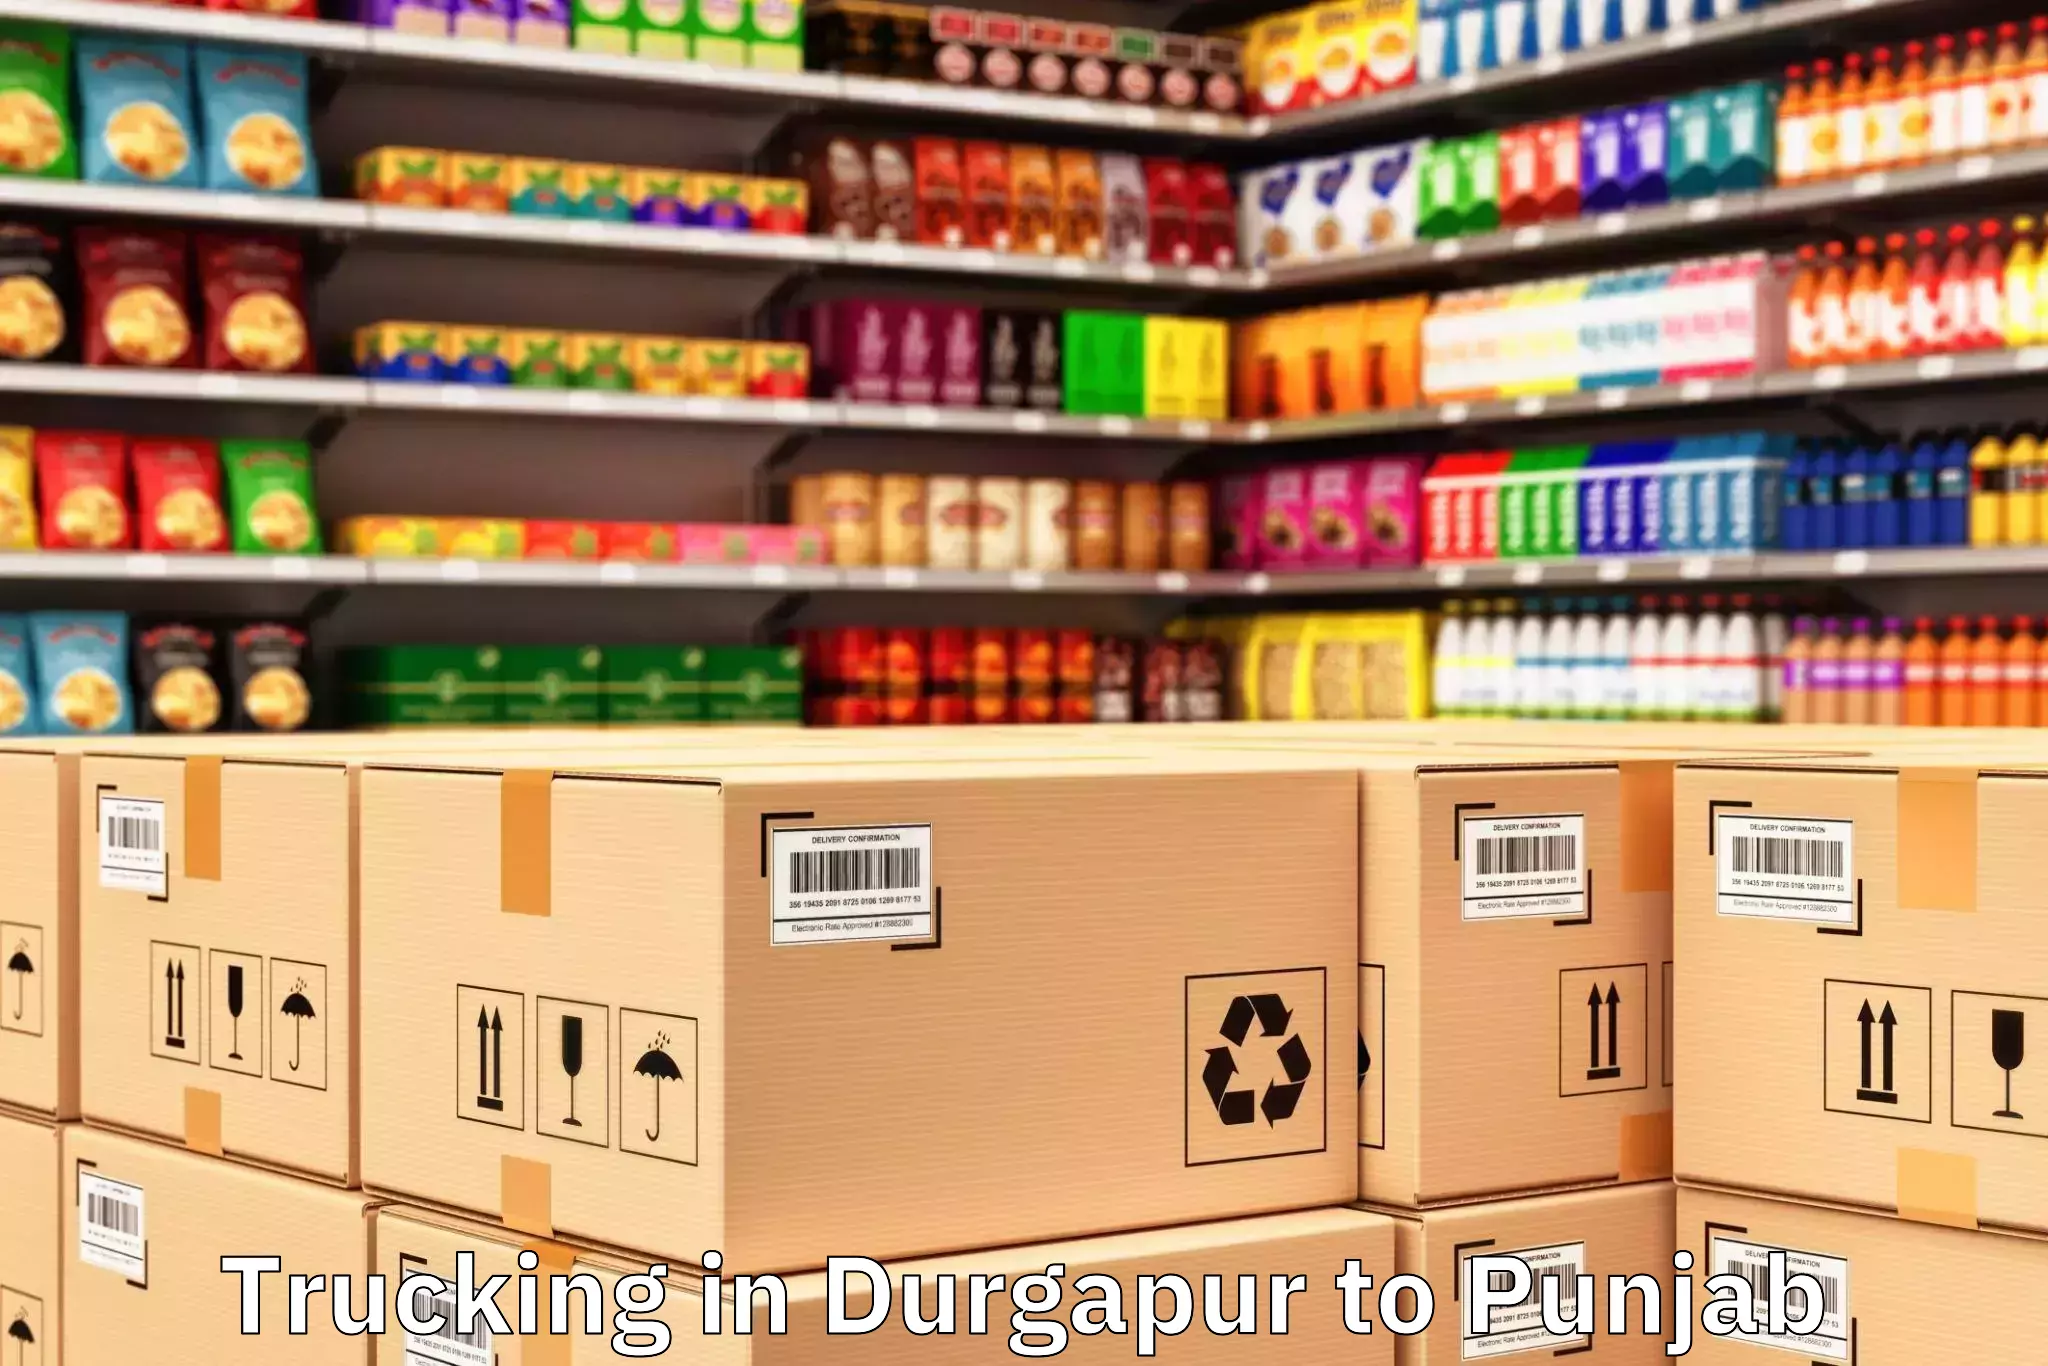 Get Durgapur to Punjab Trucking